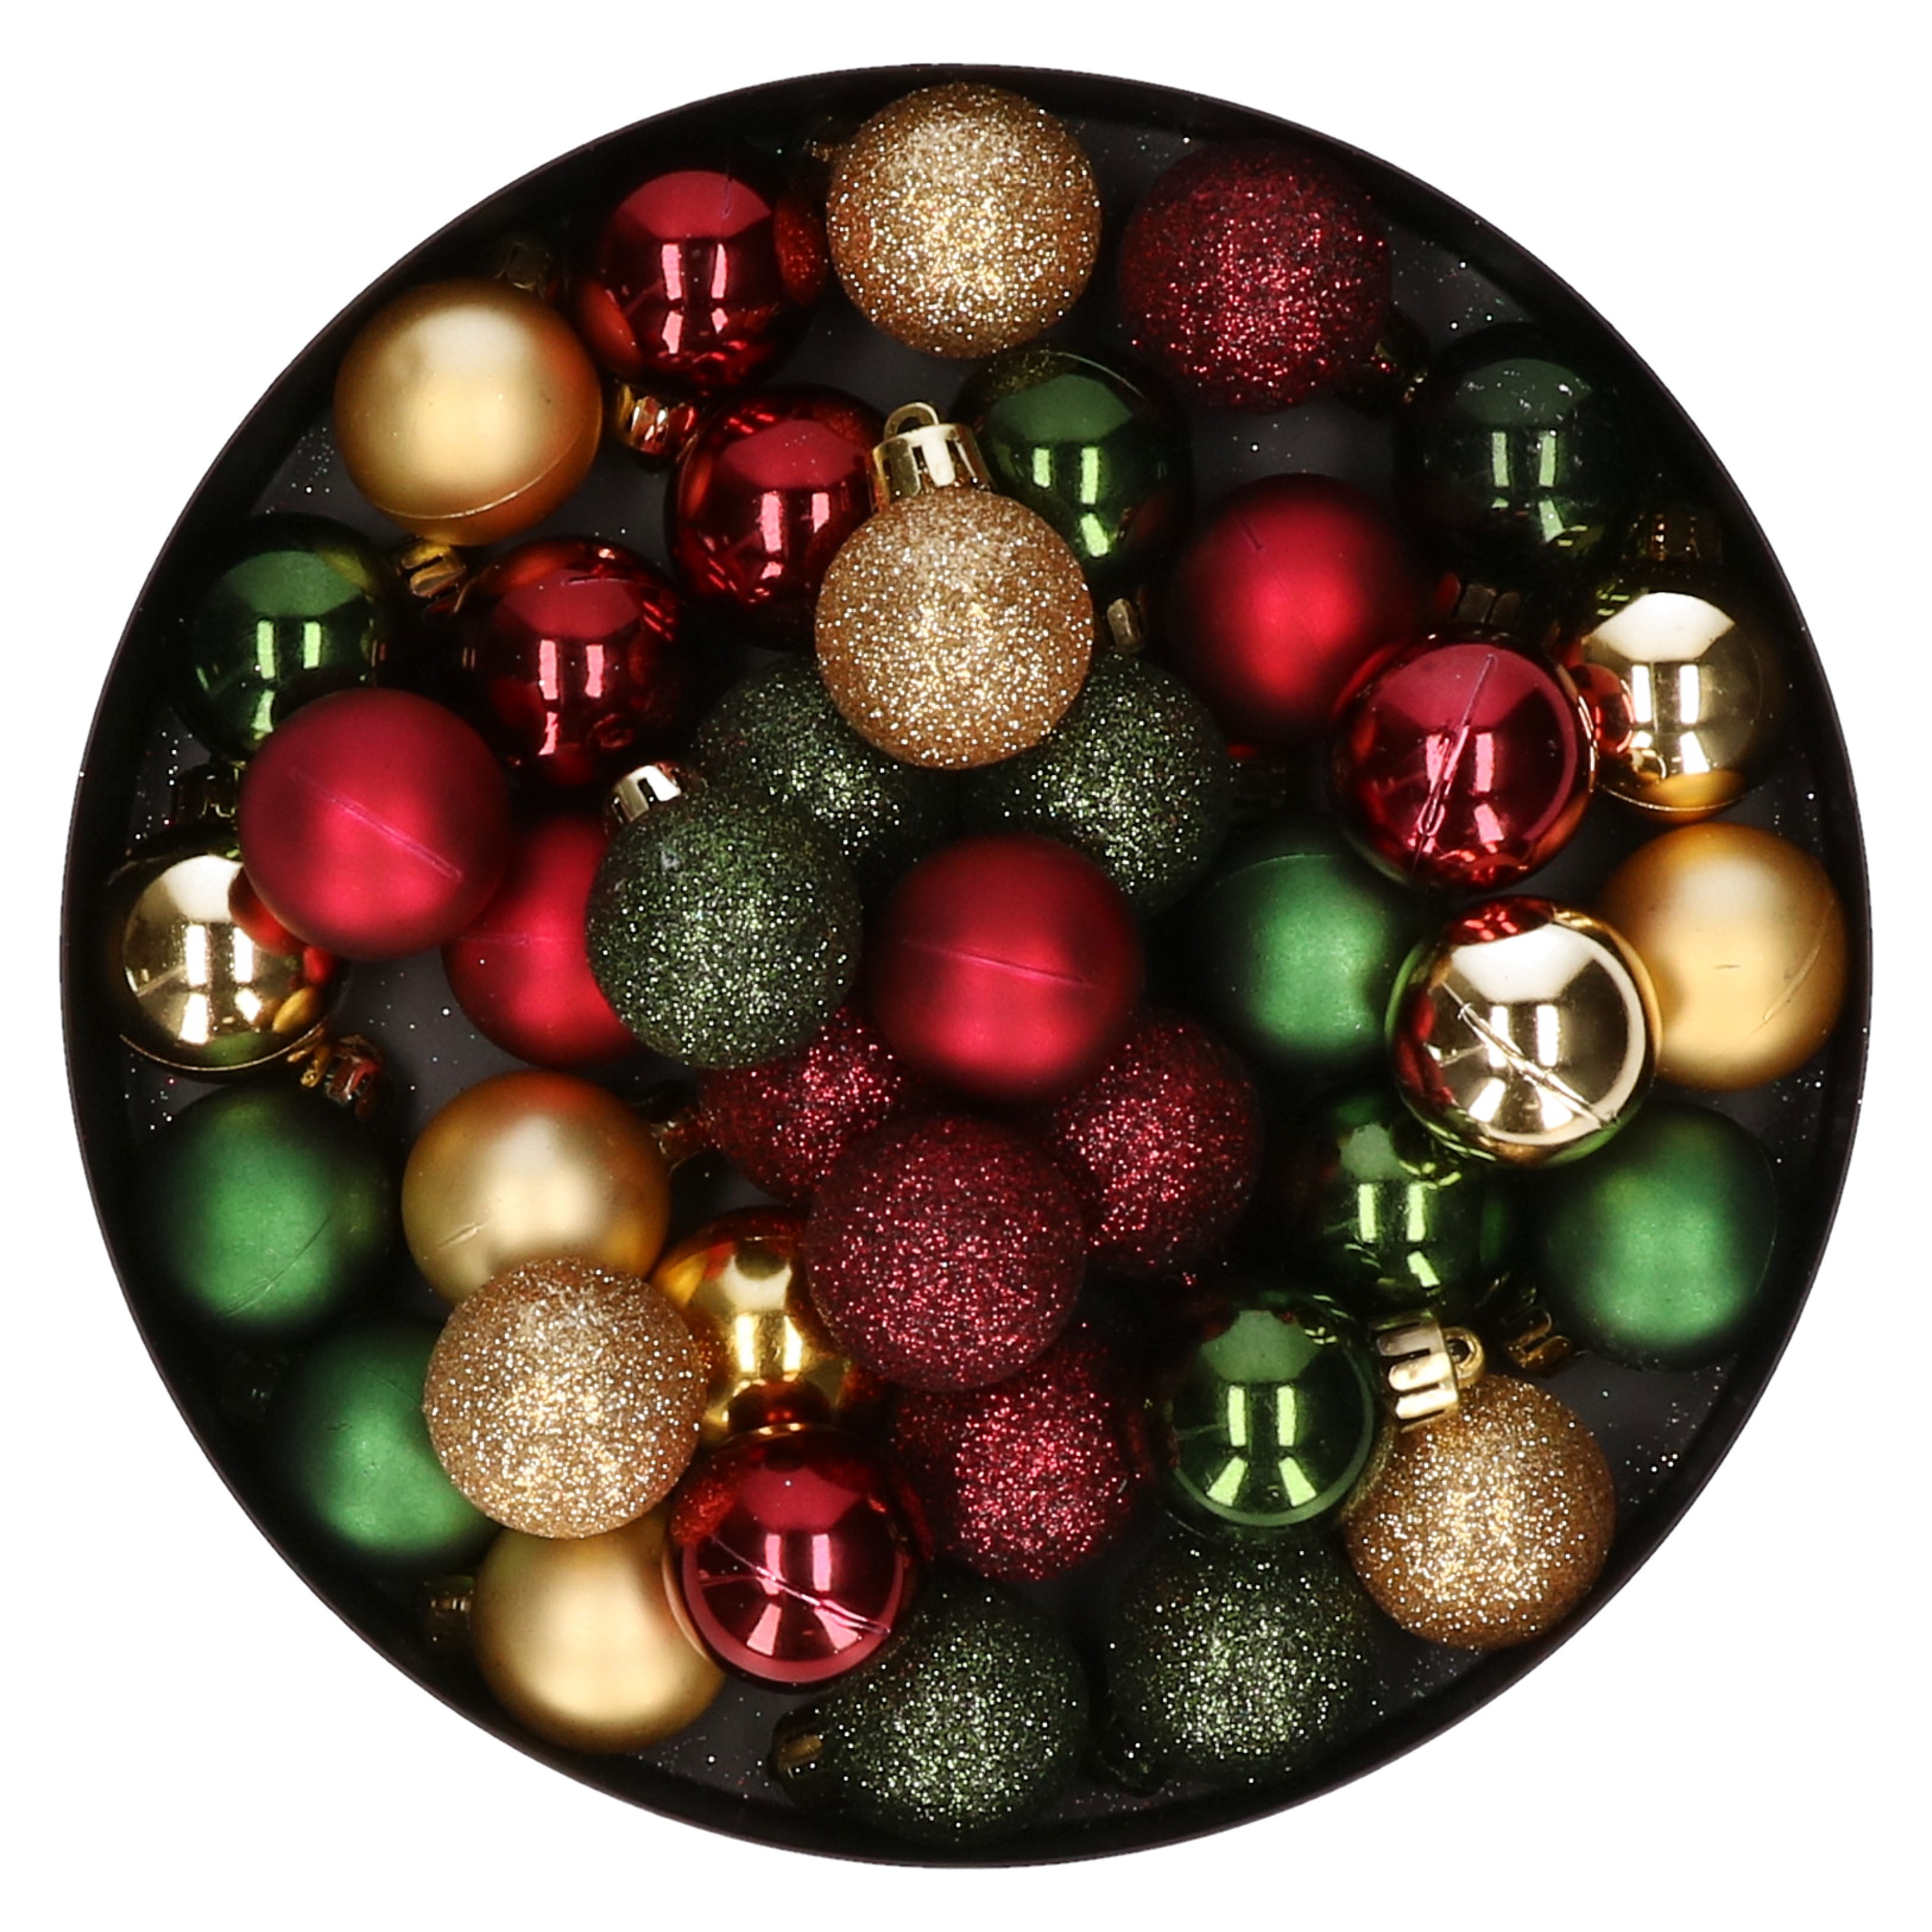 42x stuks kunststof kerstballen donkergroen, donkerrood en goud mix 3 cm